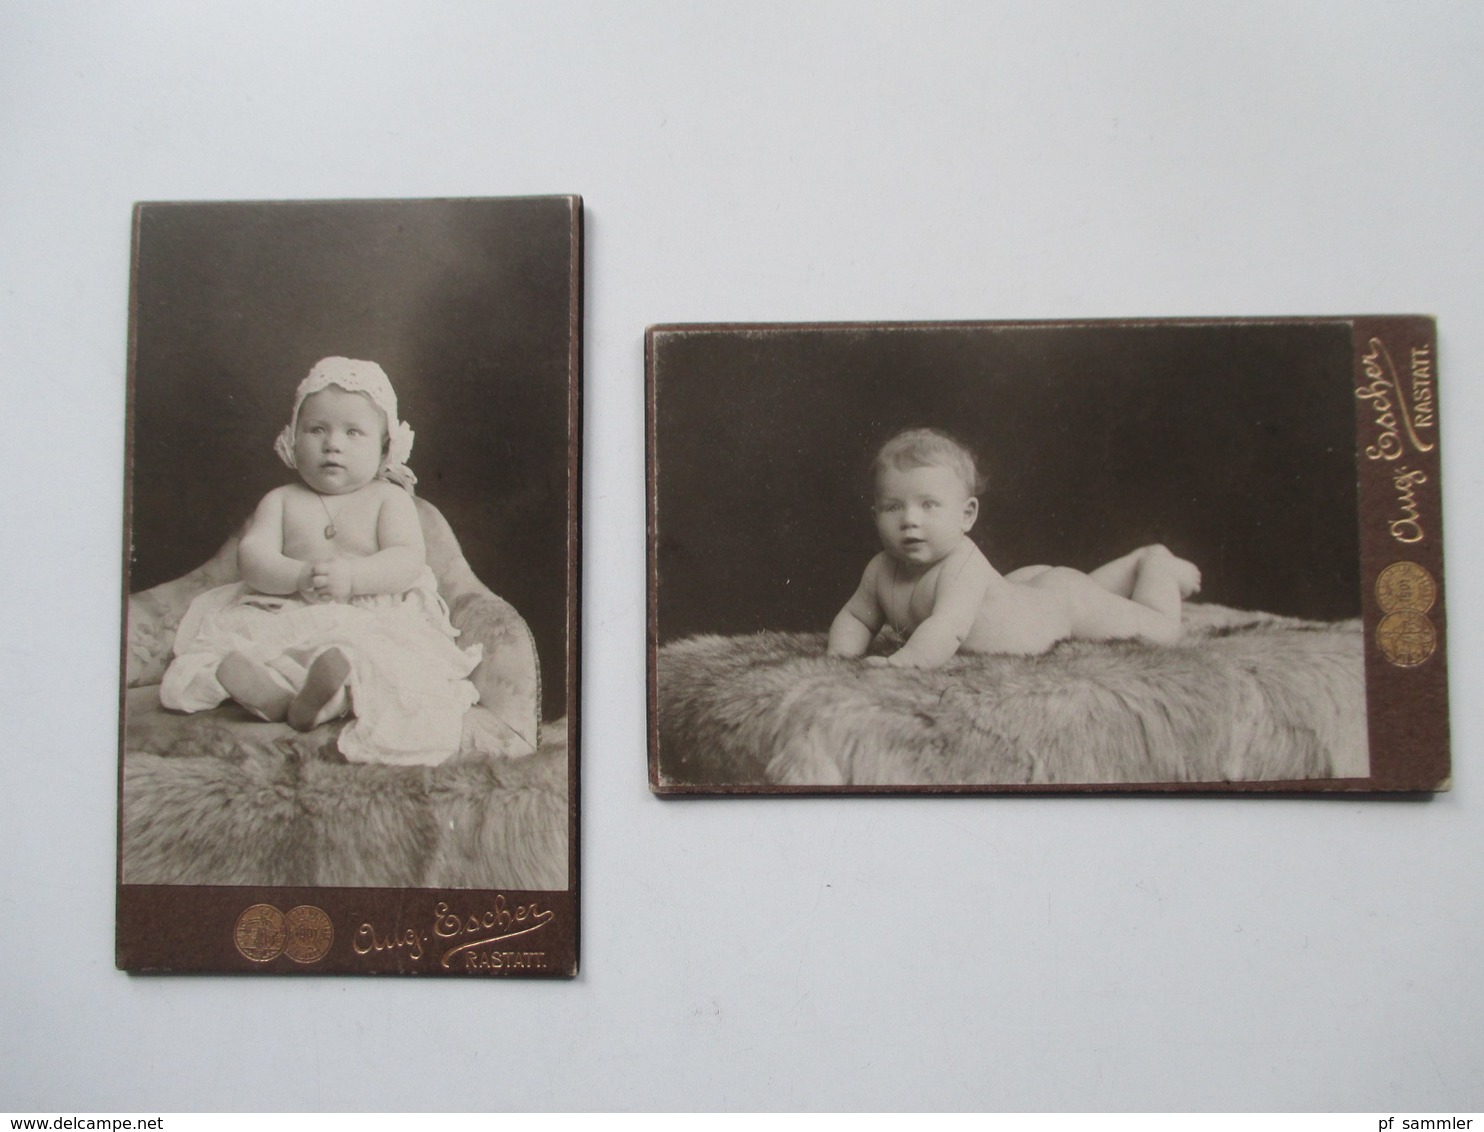 10 alte Fotos um 1900 mit Frauen / Kinder / Babies fast alle auf dicker Pappe! Interessant??